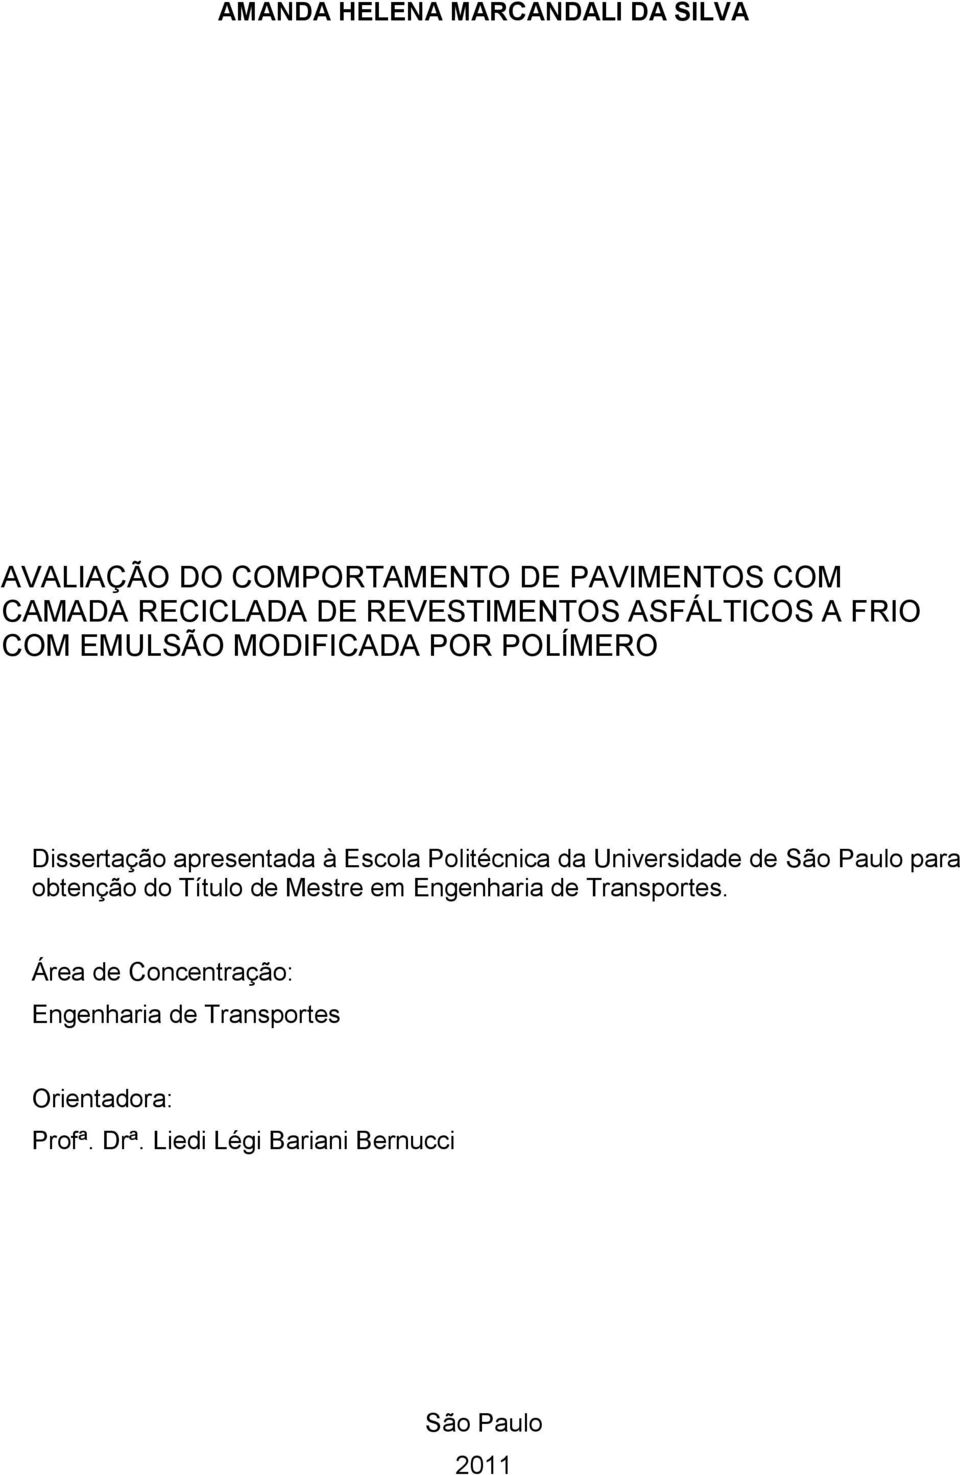 Politécnica da Universidade de São Paulo para obtenção do Título de Mestre em Engenharia de Transportes.